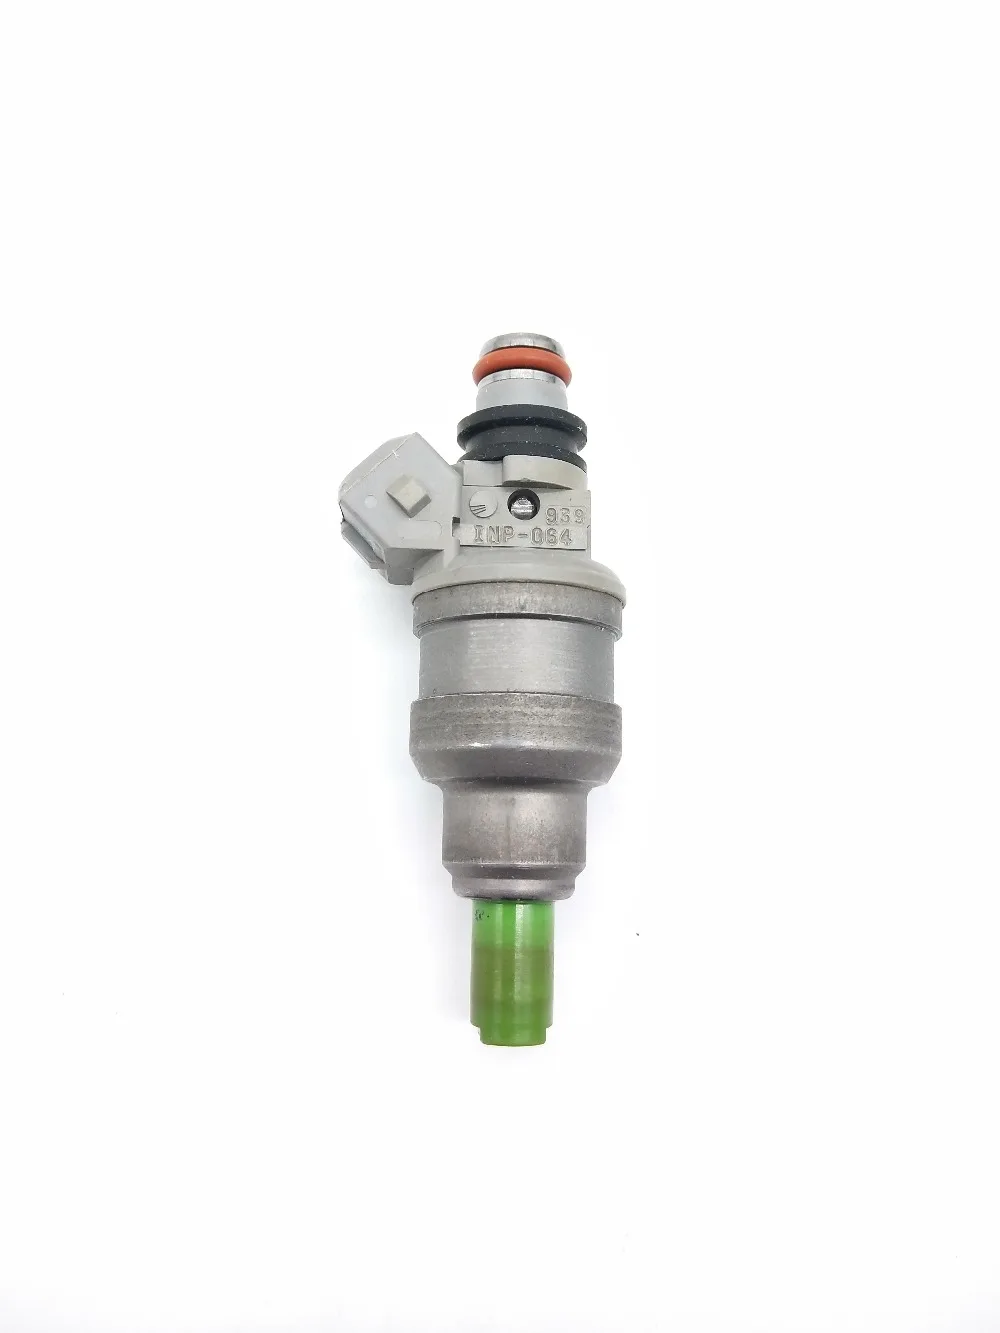 

1x Fuel Injector Nozzle INP-064 For Mitsubishi-MD175077 Car PartsD175077 FJ410